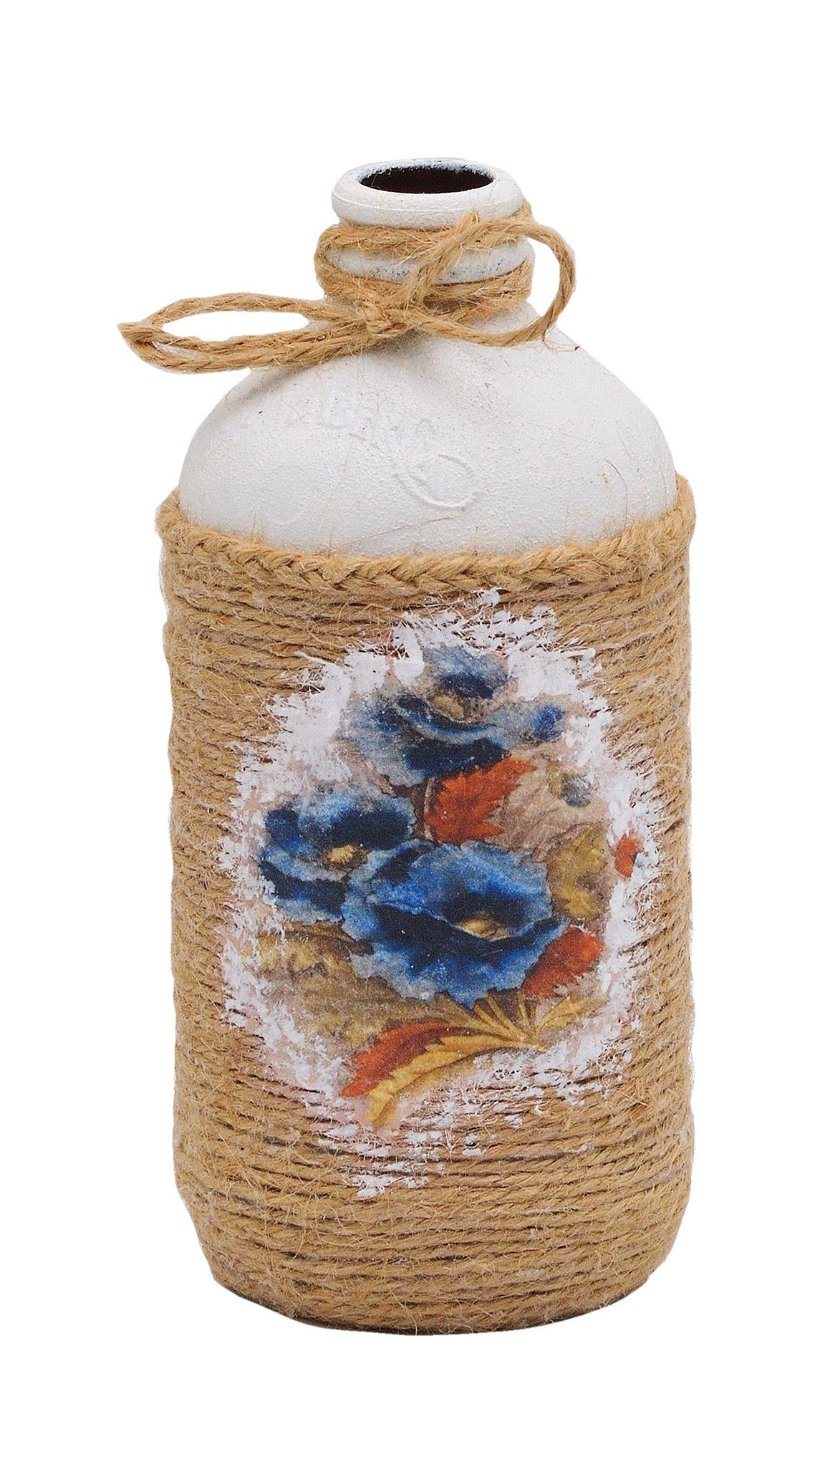 Sticla îmbrăcată în șnur iuta și decorata cu hârtie orez, 2135